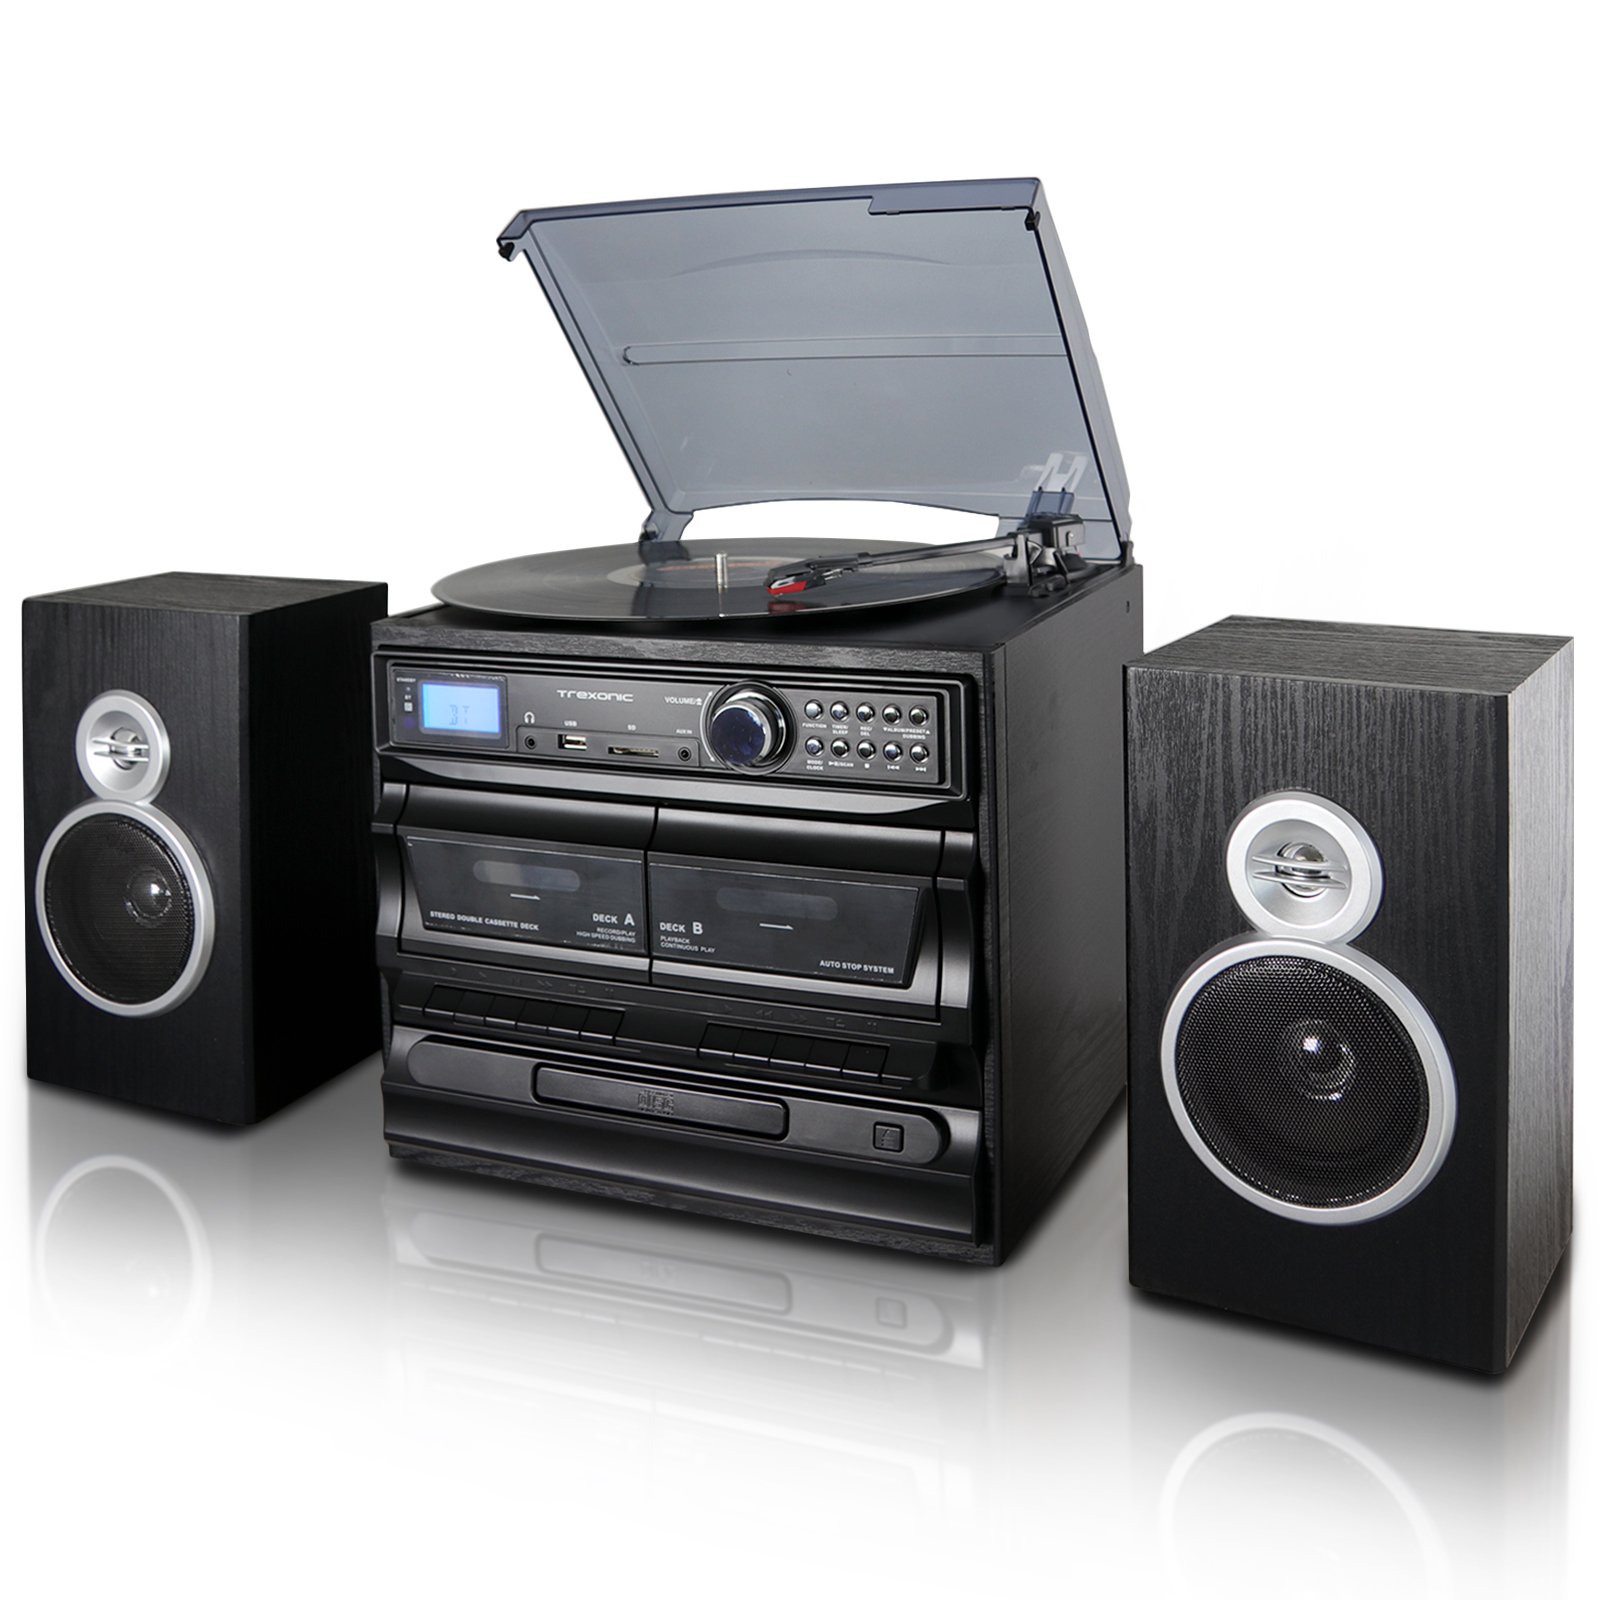 Trexonic CD プレーヤー、デュアル カセット プレーヤー、Bt、FM ラジオ、USB/SD 録音、有線シェルフ スピーカー付き 3 スピード ターンテーブル